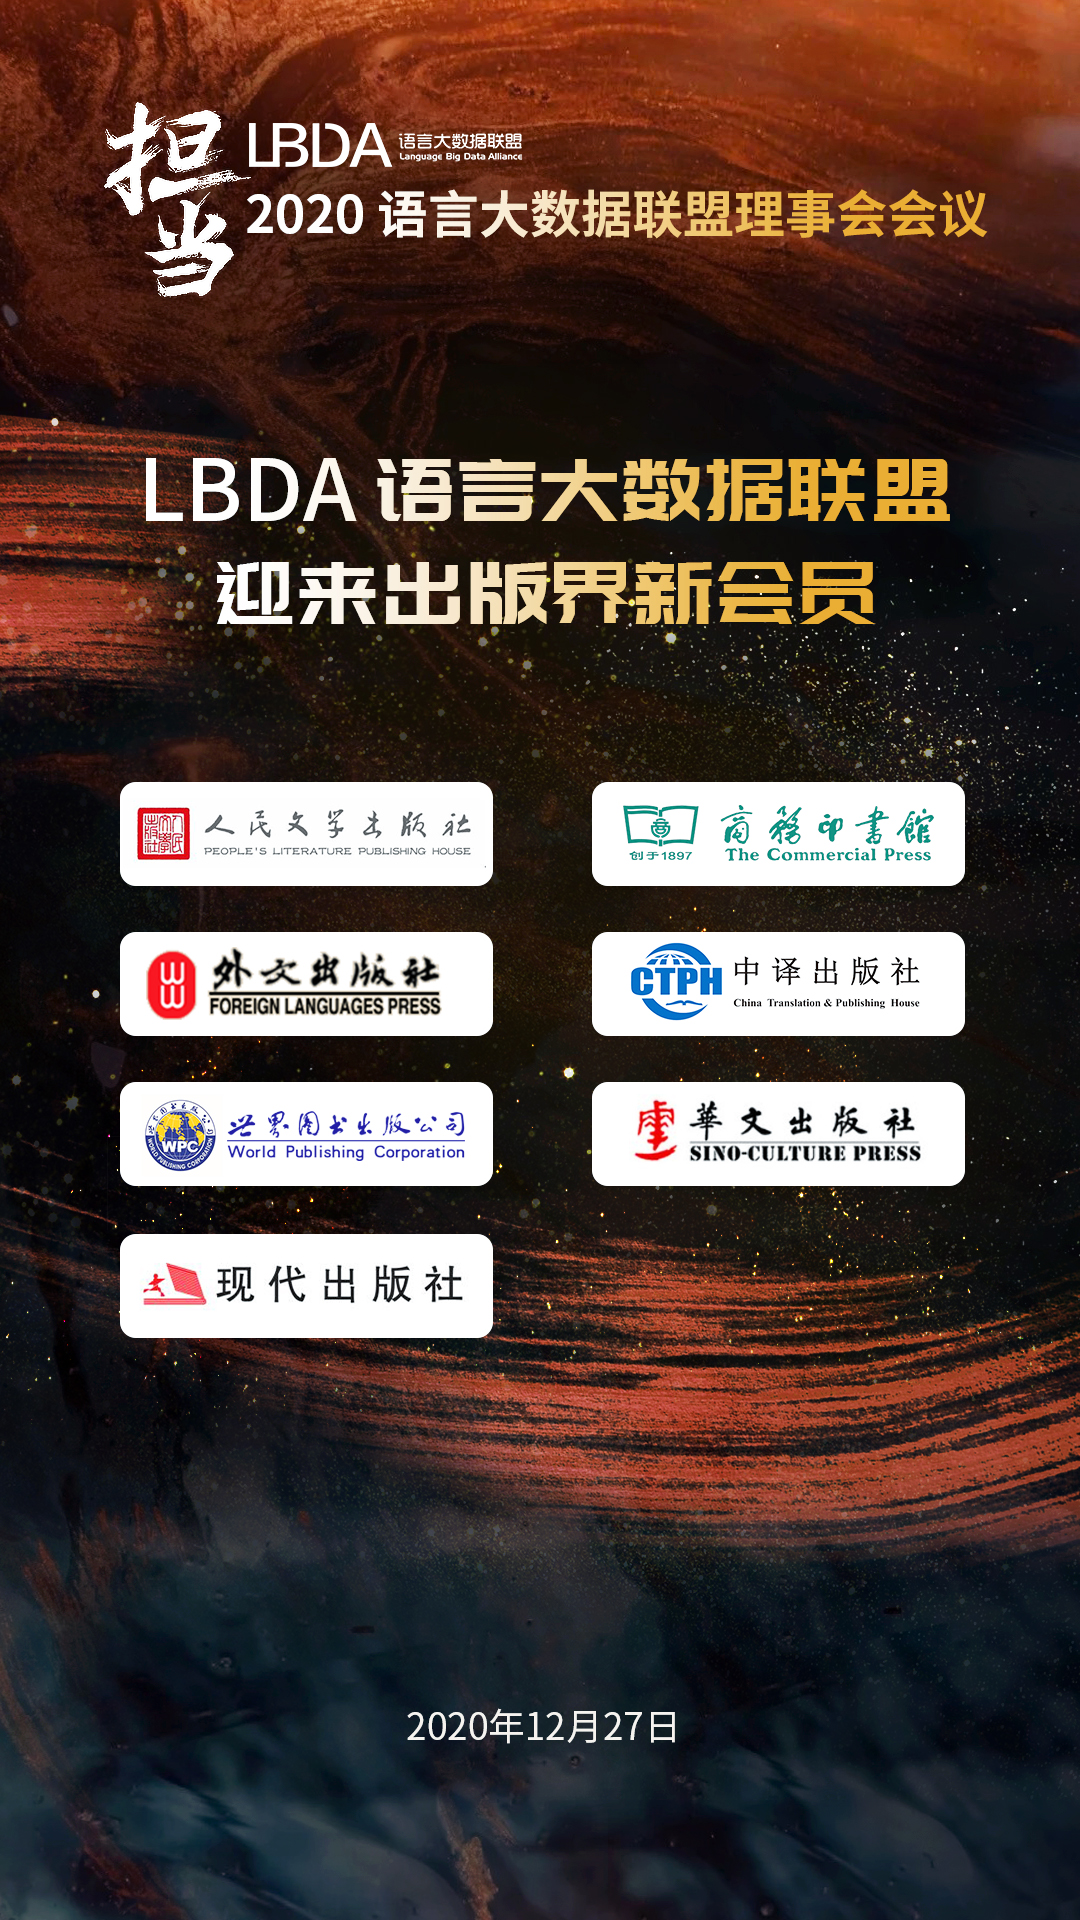 七家出版社成为LBDA新会员.jpg